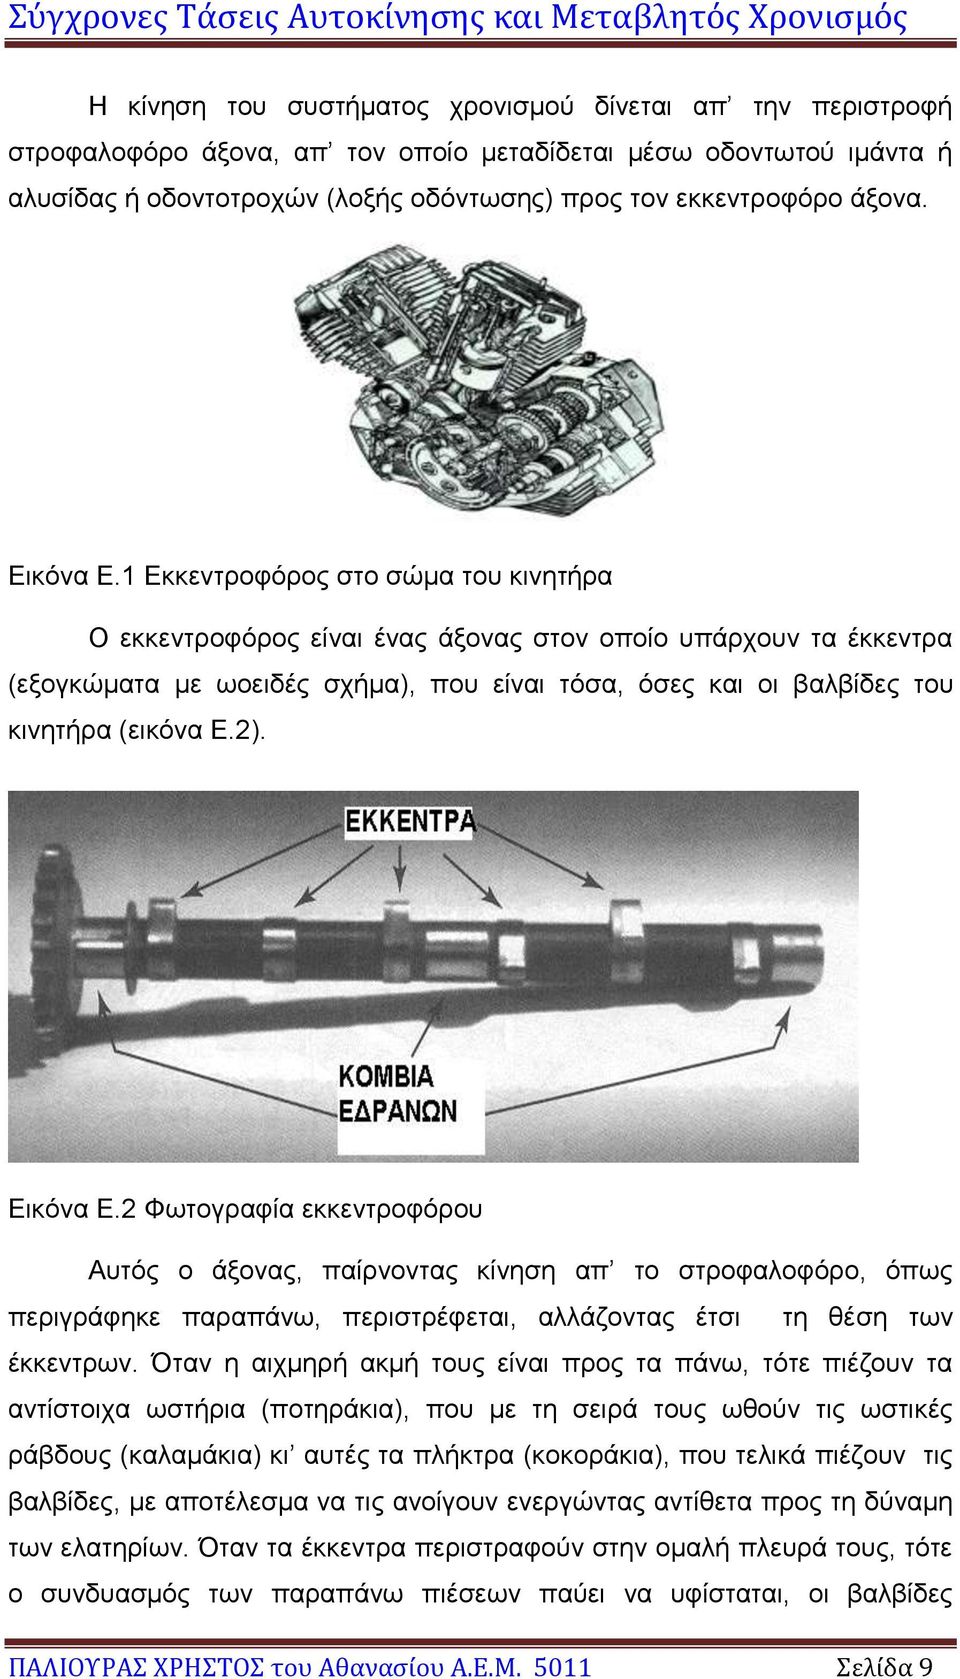 1 Εκκεντροφόρος στο σώμα του κινητήρα Ο εκκεντροφόρος είναι ένας άξονας στον οποίο υπάρχουν τα έκκεντρα (εξογκώματα με ωοειδές σχήμα), που είναι τόσα, όσες και οι βαλβίδες του κινητήρα (εικόνα Ε.2).